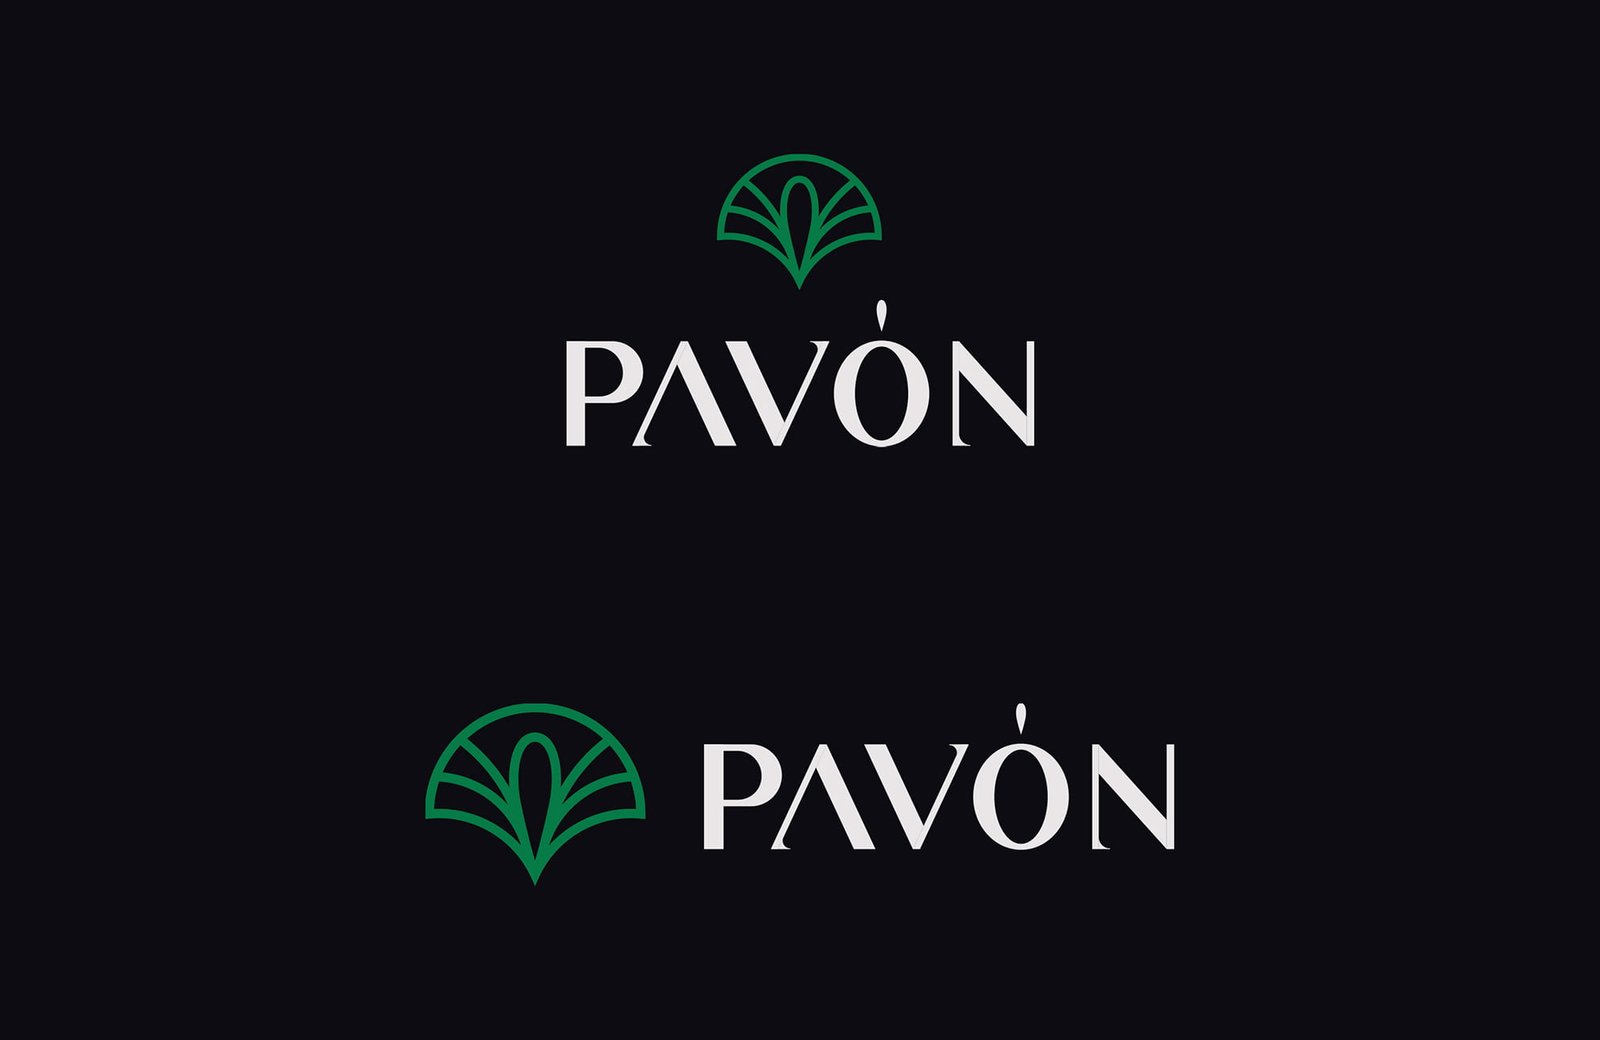 Pavon Watches logo Variations